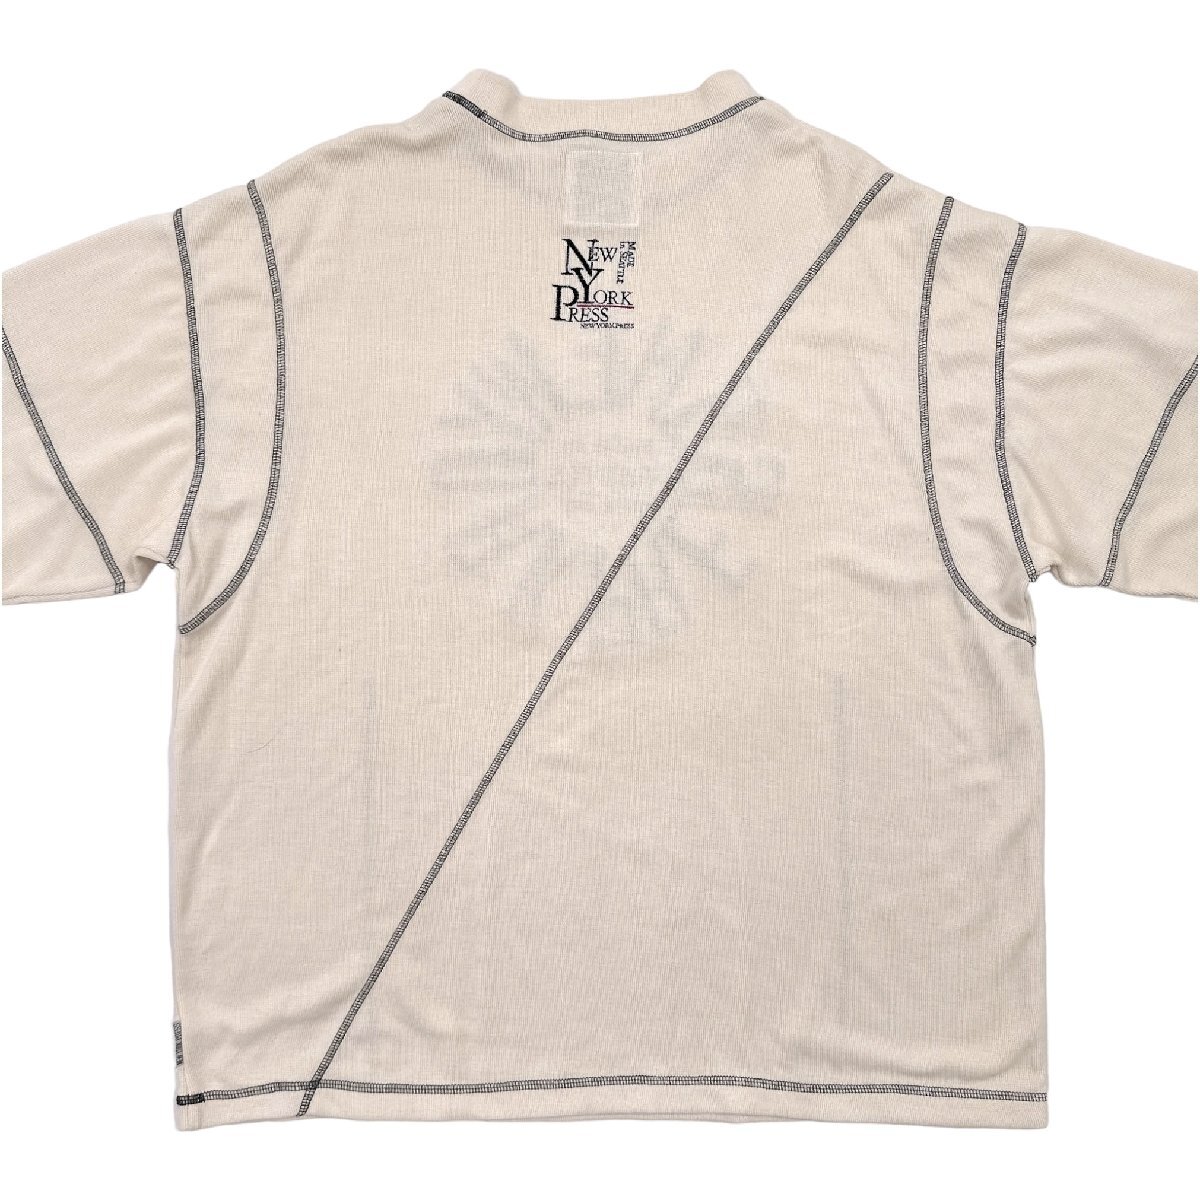 NEW YORK PRESS 立体BIG刺繍 サマーニット セーター シャツ /アイボリー/メンズ/古着/ビンテージ/ビッグサイズ_画像8